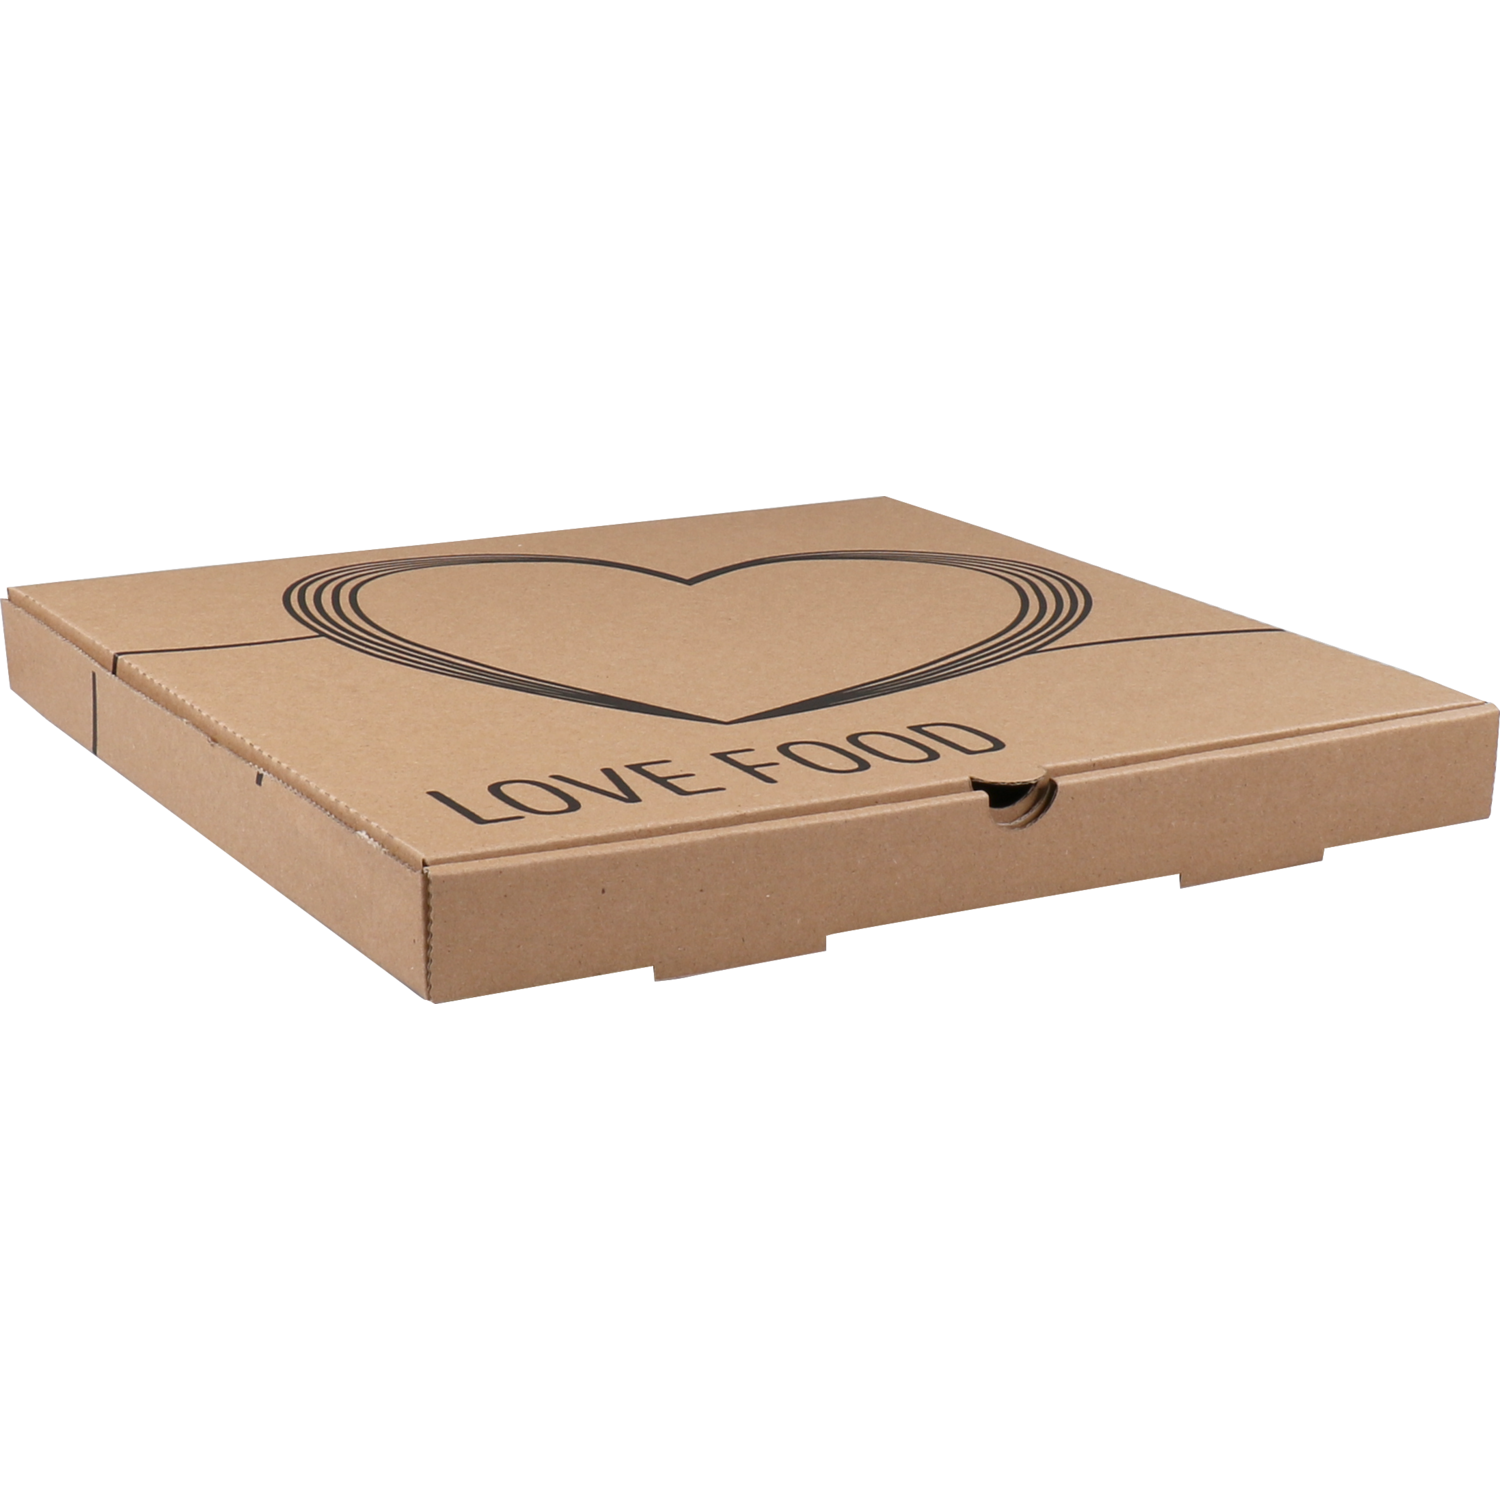  Pizza box, Americano Love Food, corrugated cardboard, 30x30x3cm, americano, brown  1